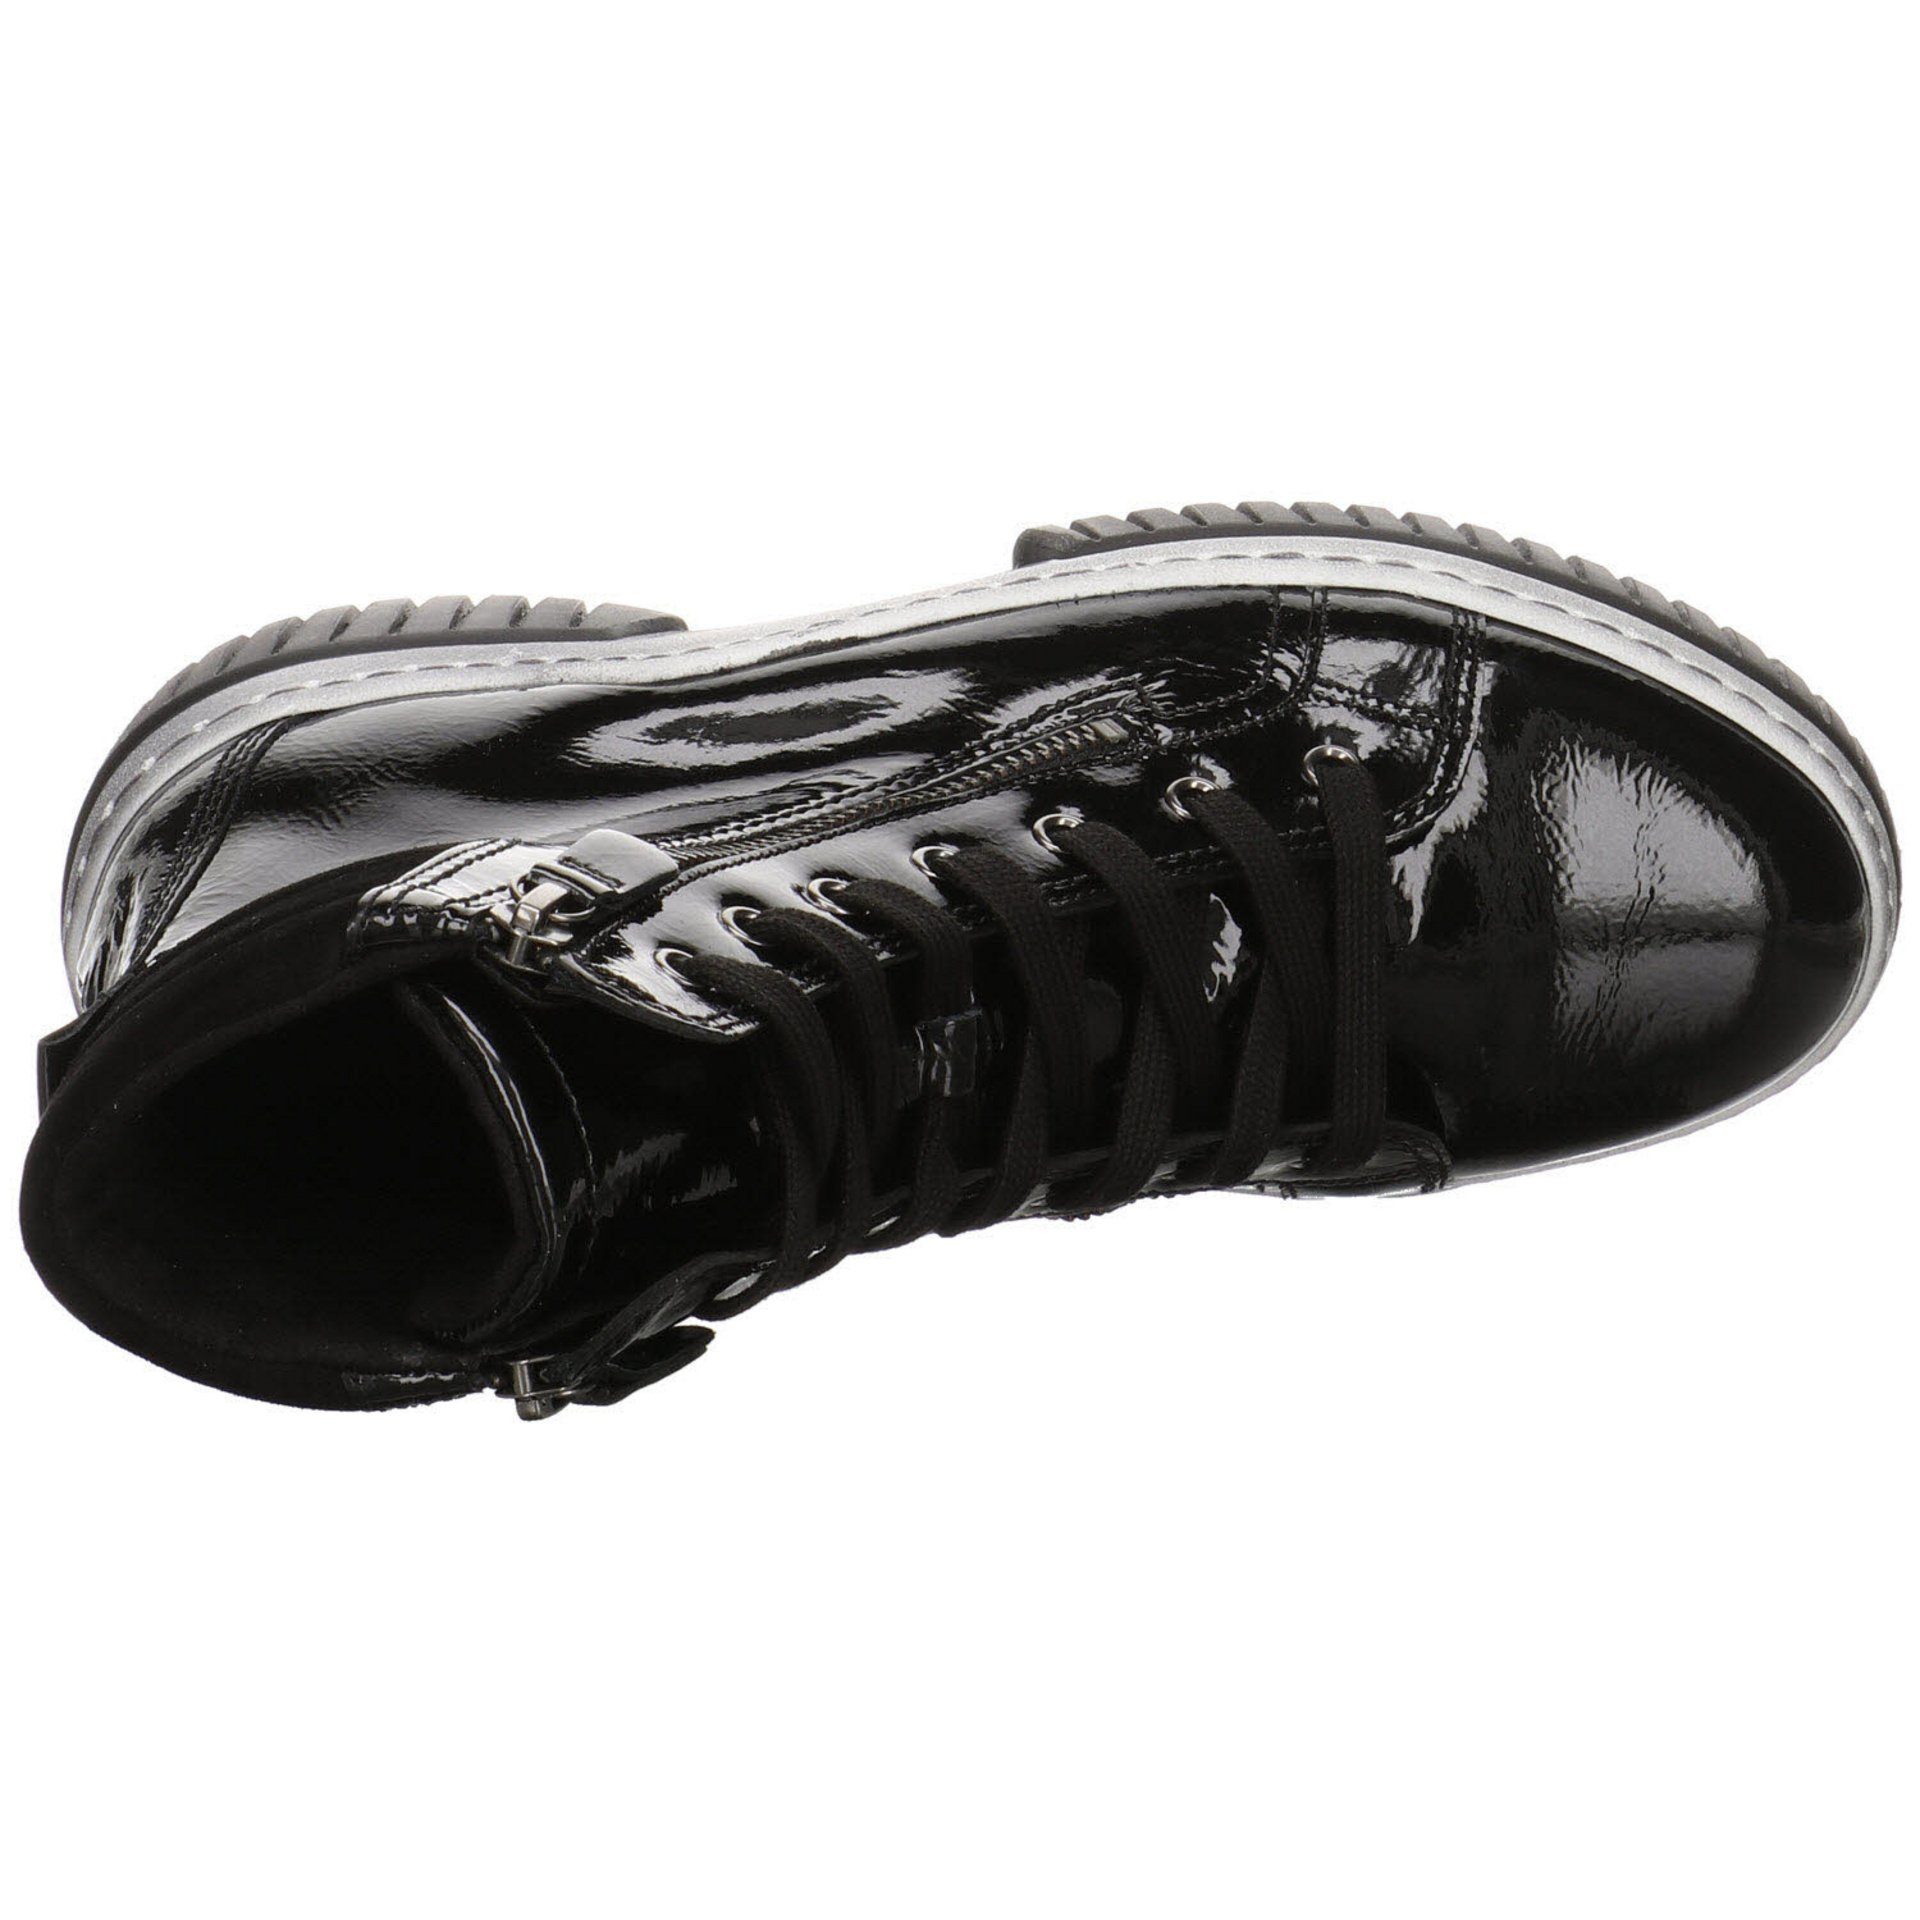 Gabor Damen Stiefeletten Schuhe Boots Freizeit Schnürstiefel Lackleder schwarz(altsilber) Elegant